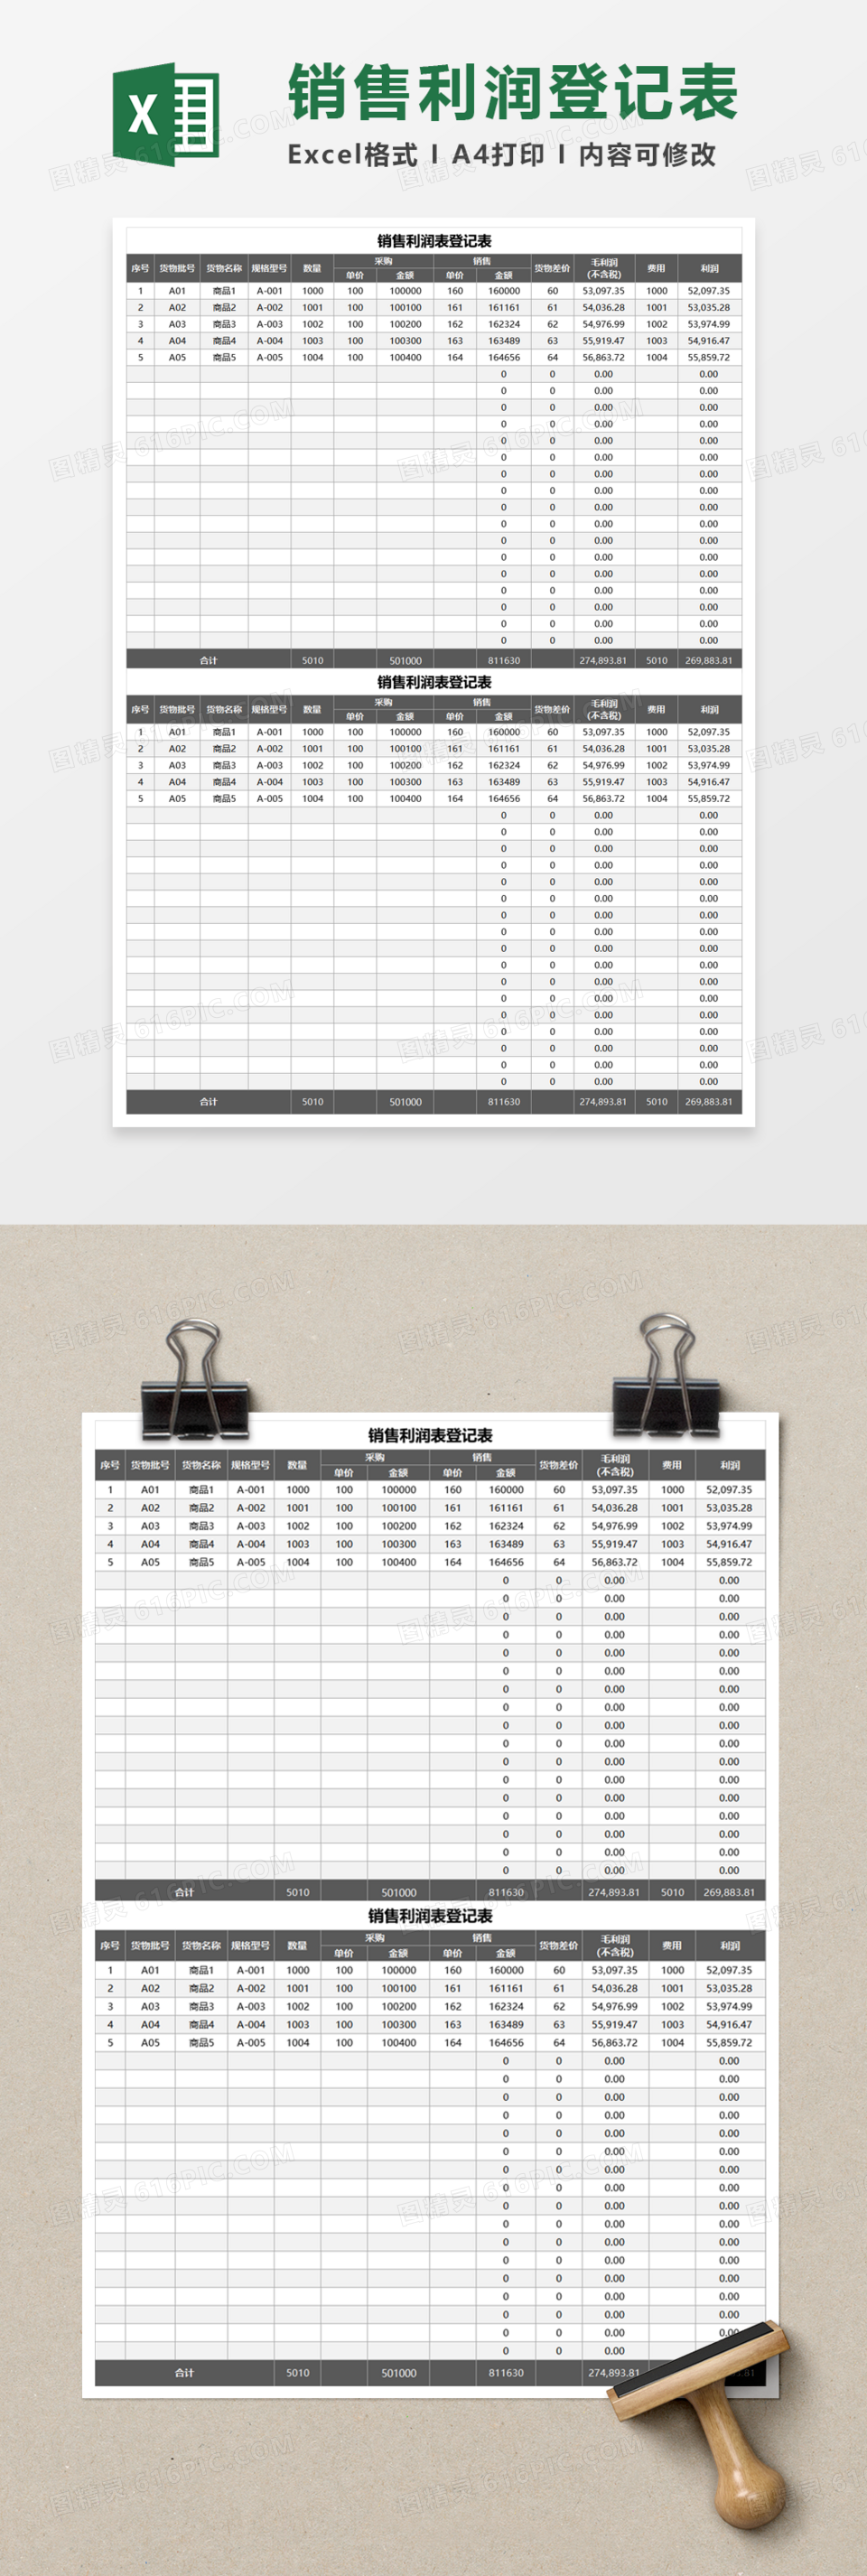 商品产品销售利润表登记表Excel模板